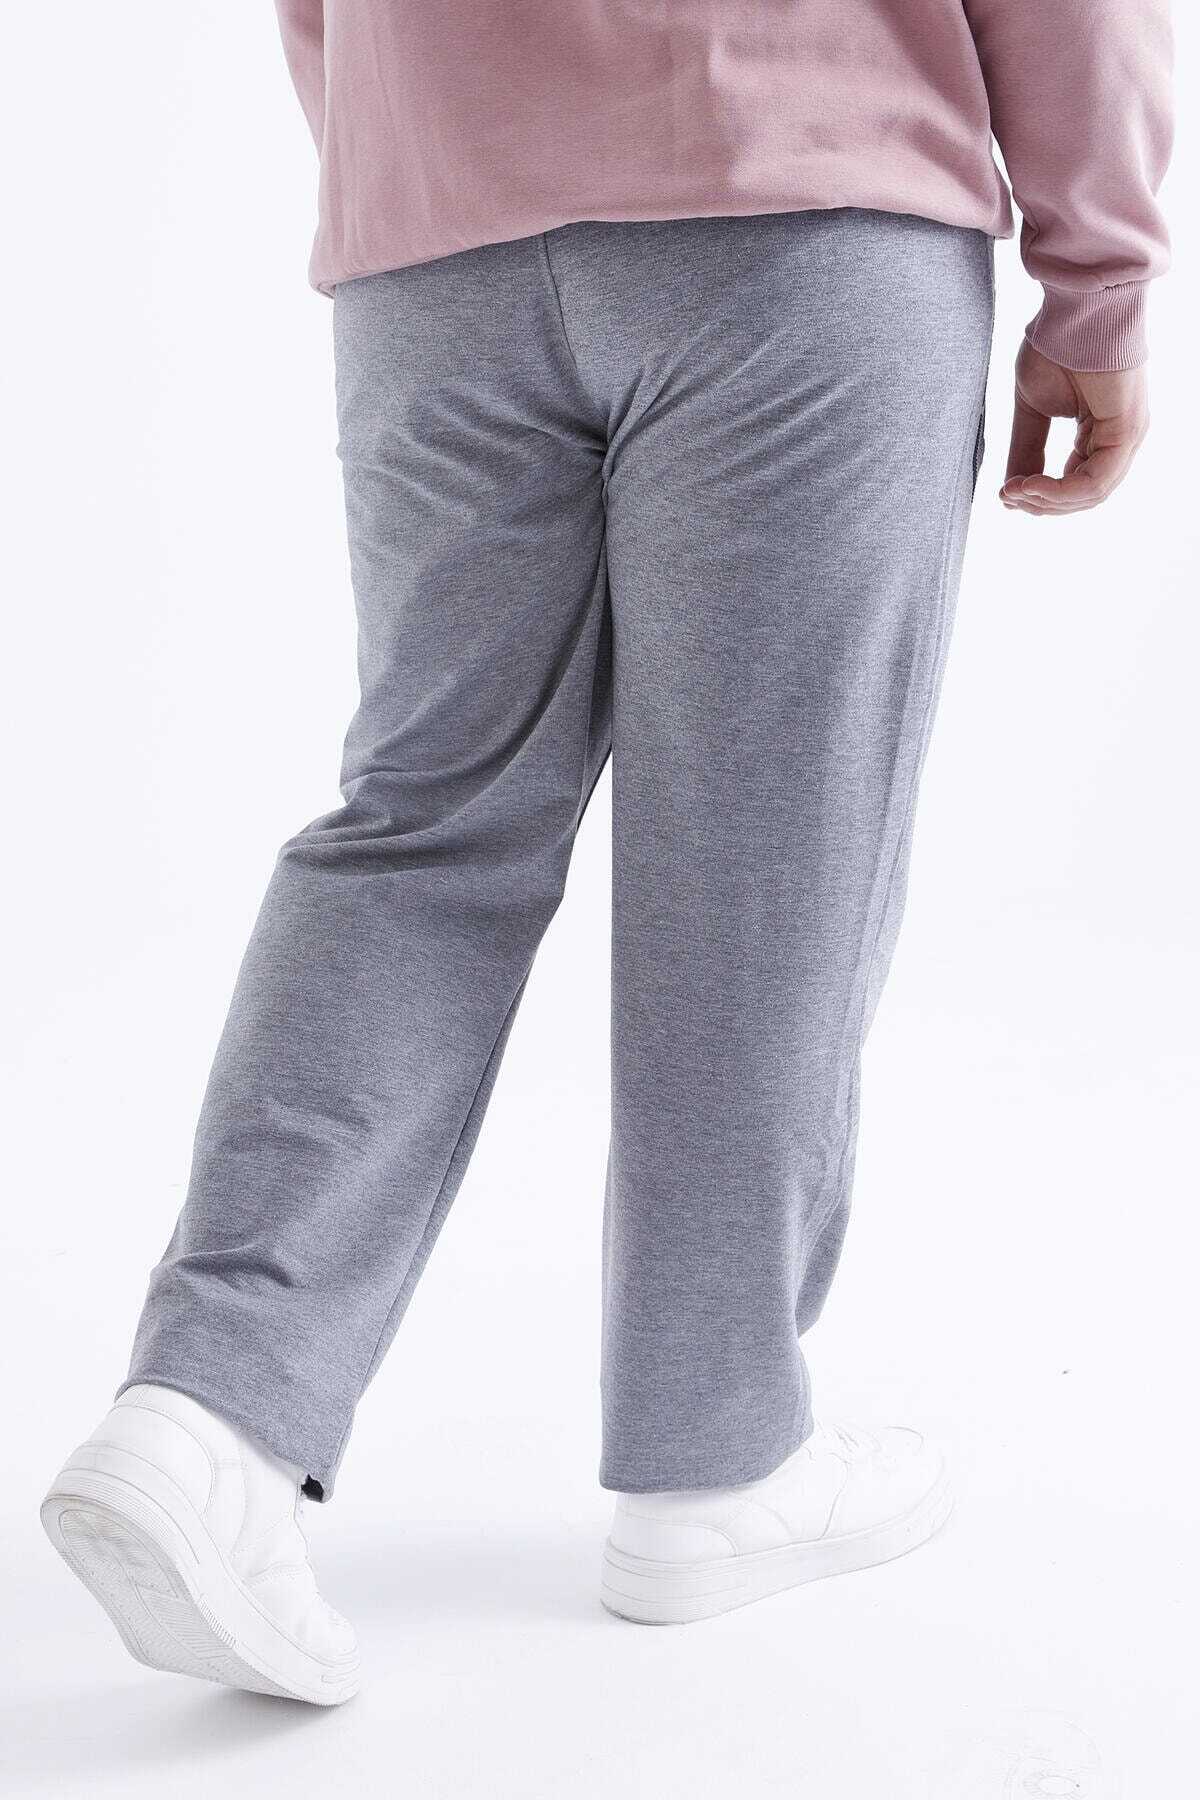 شلوار گرمکن جیب زیپ دار سایز بزرگ مردانه خاکستری روشن برند Tommy Life